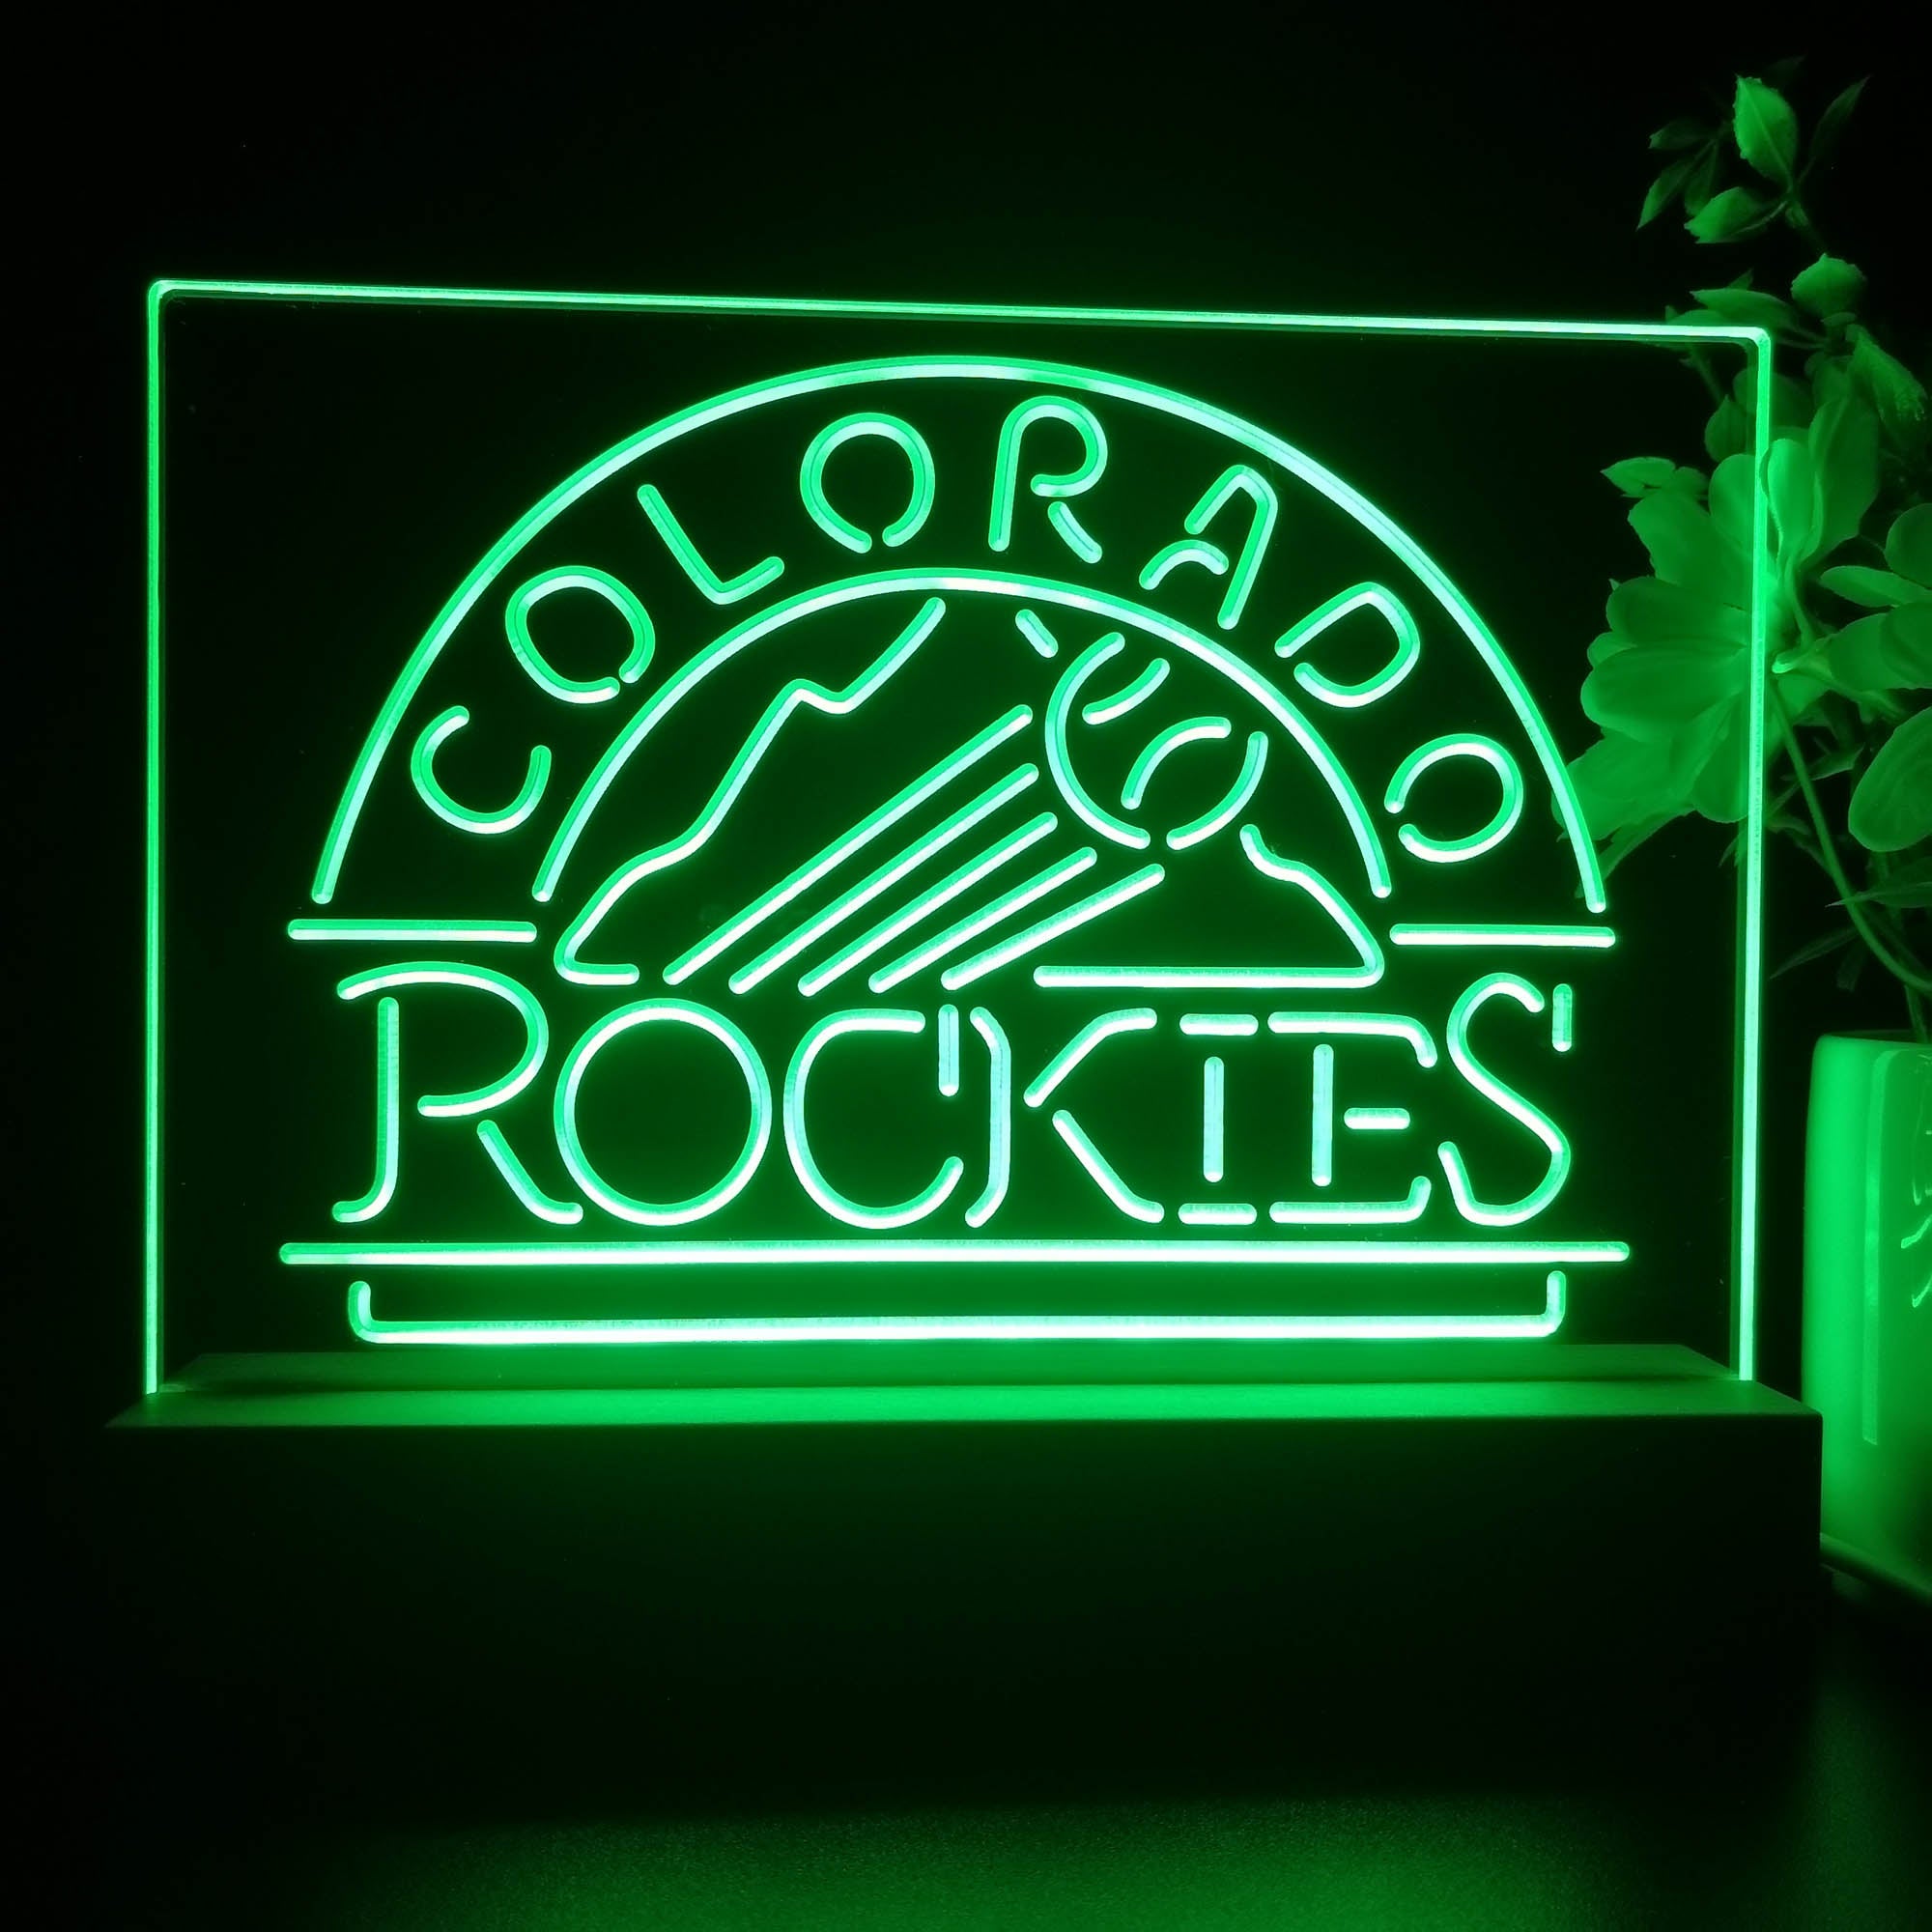 Colorado Rockies Neon Sign Pub Bar Lamp